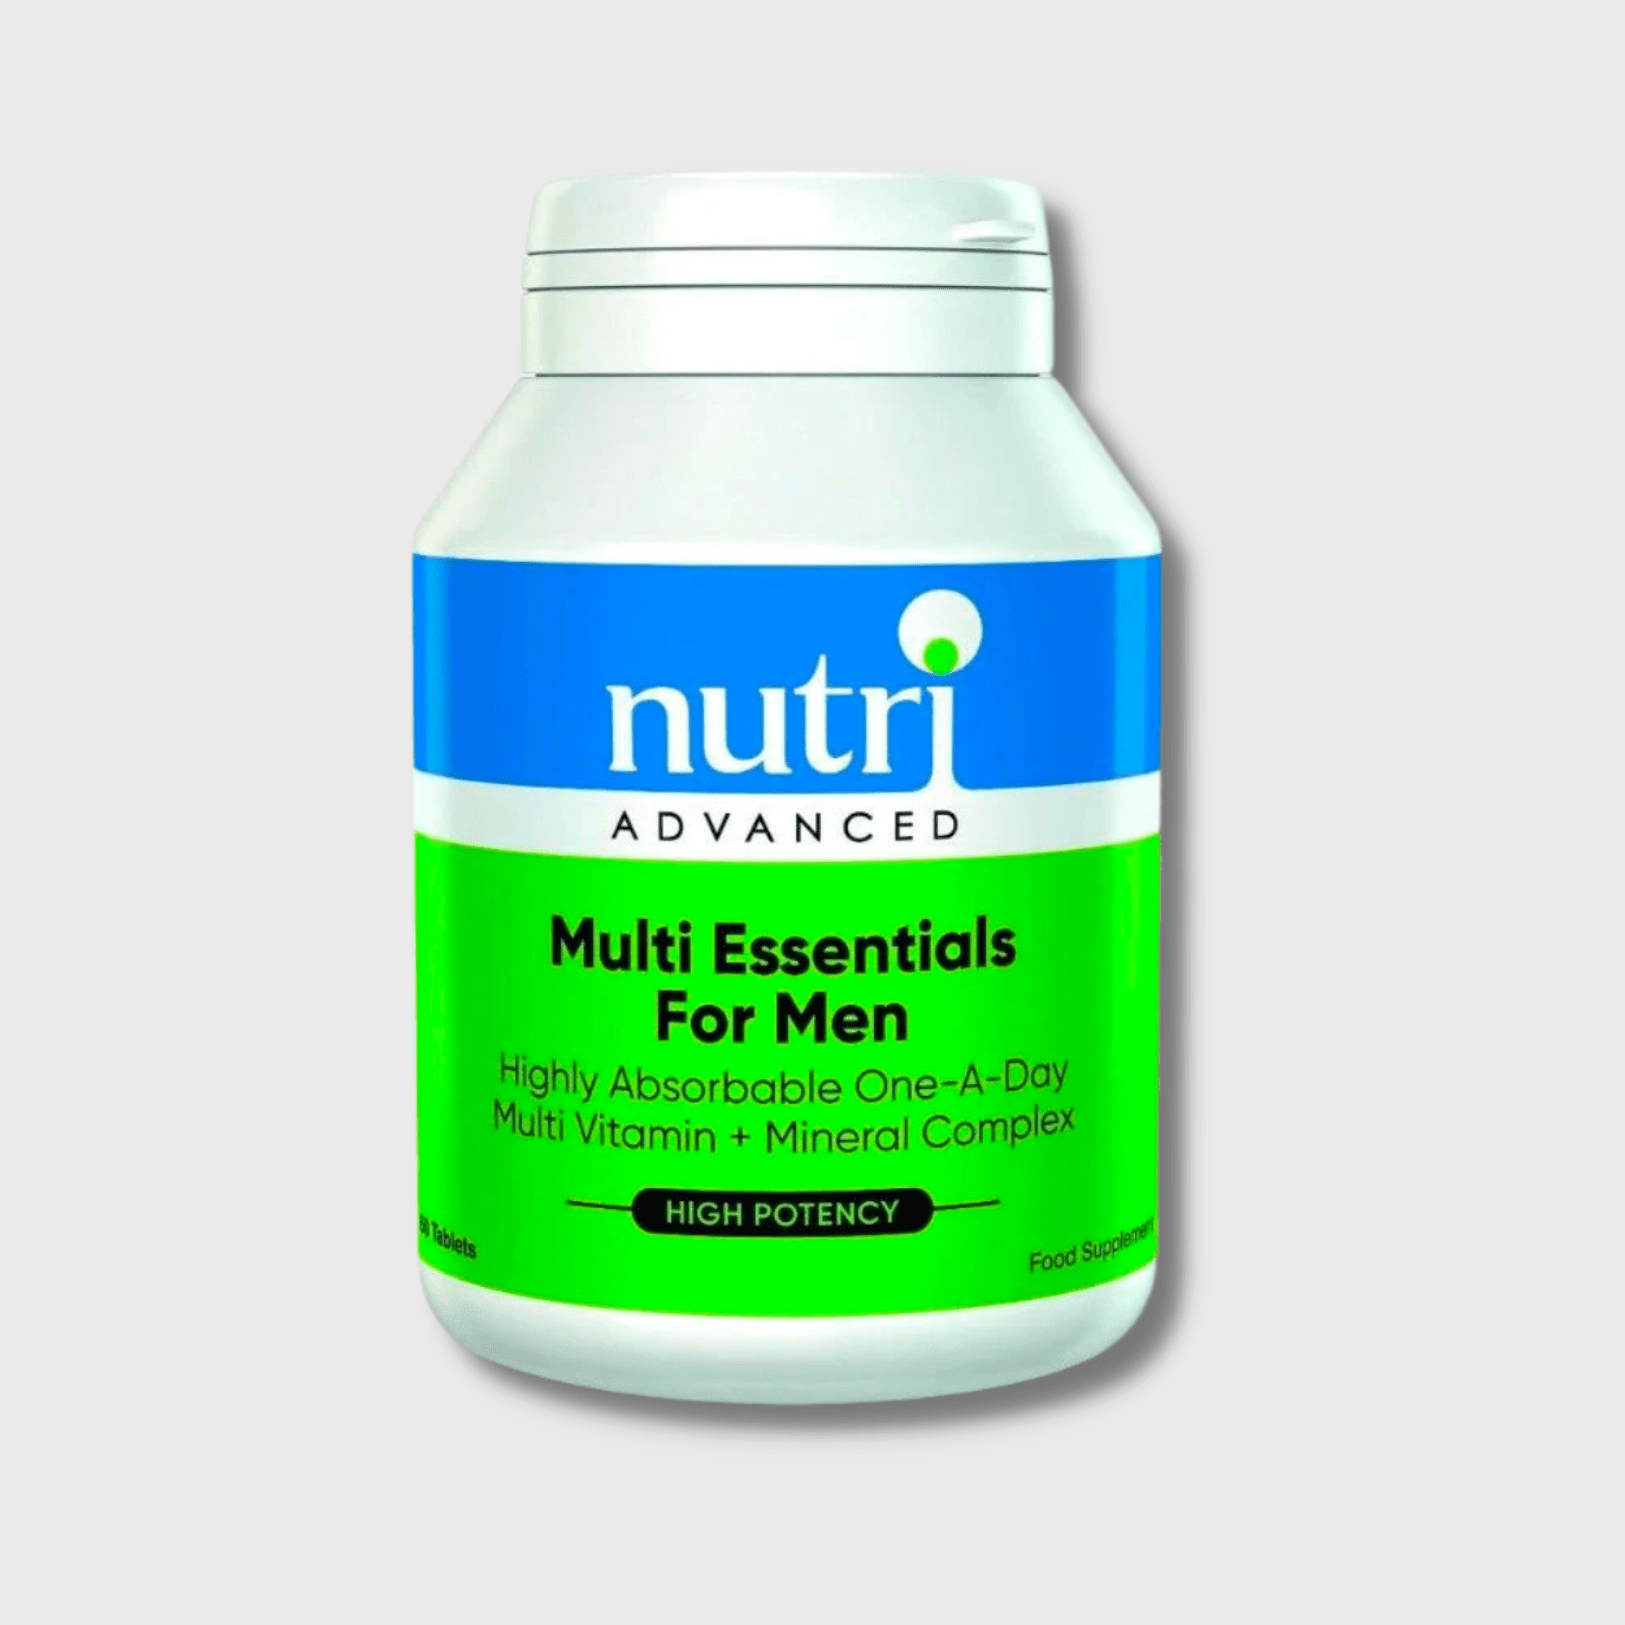 Multi Essentials for Men